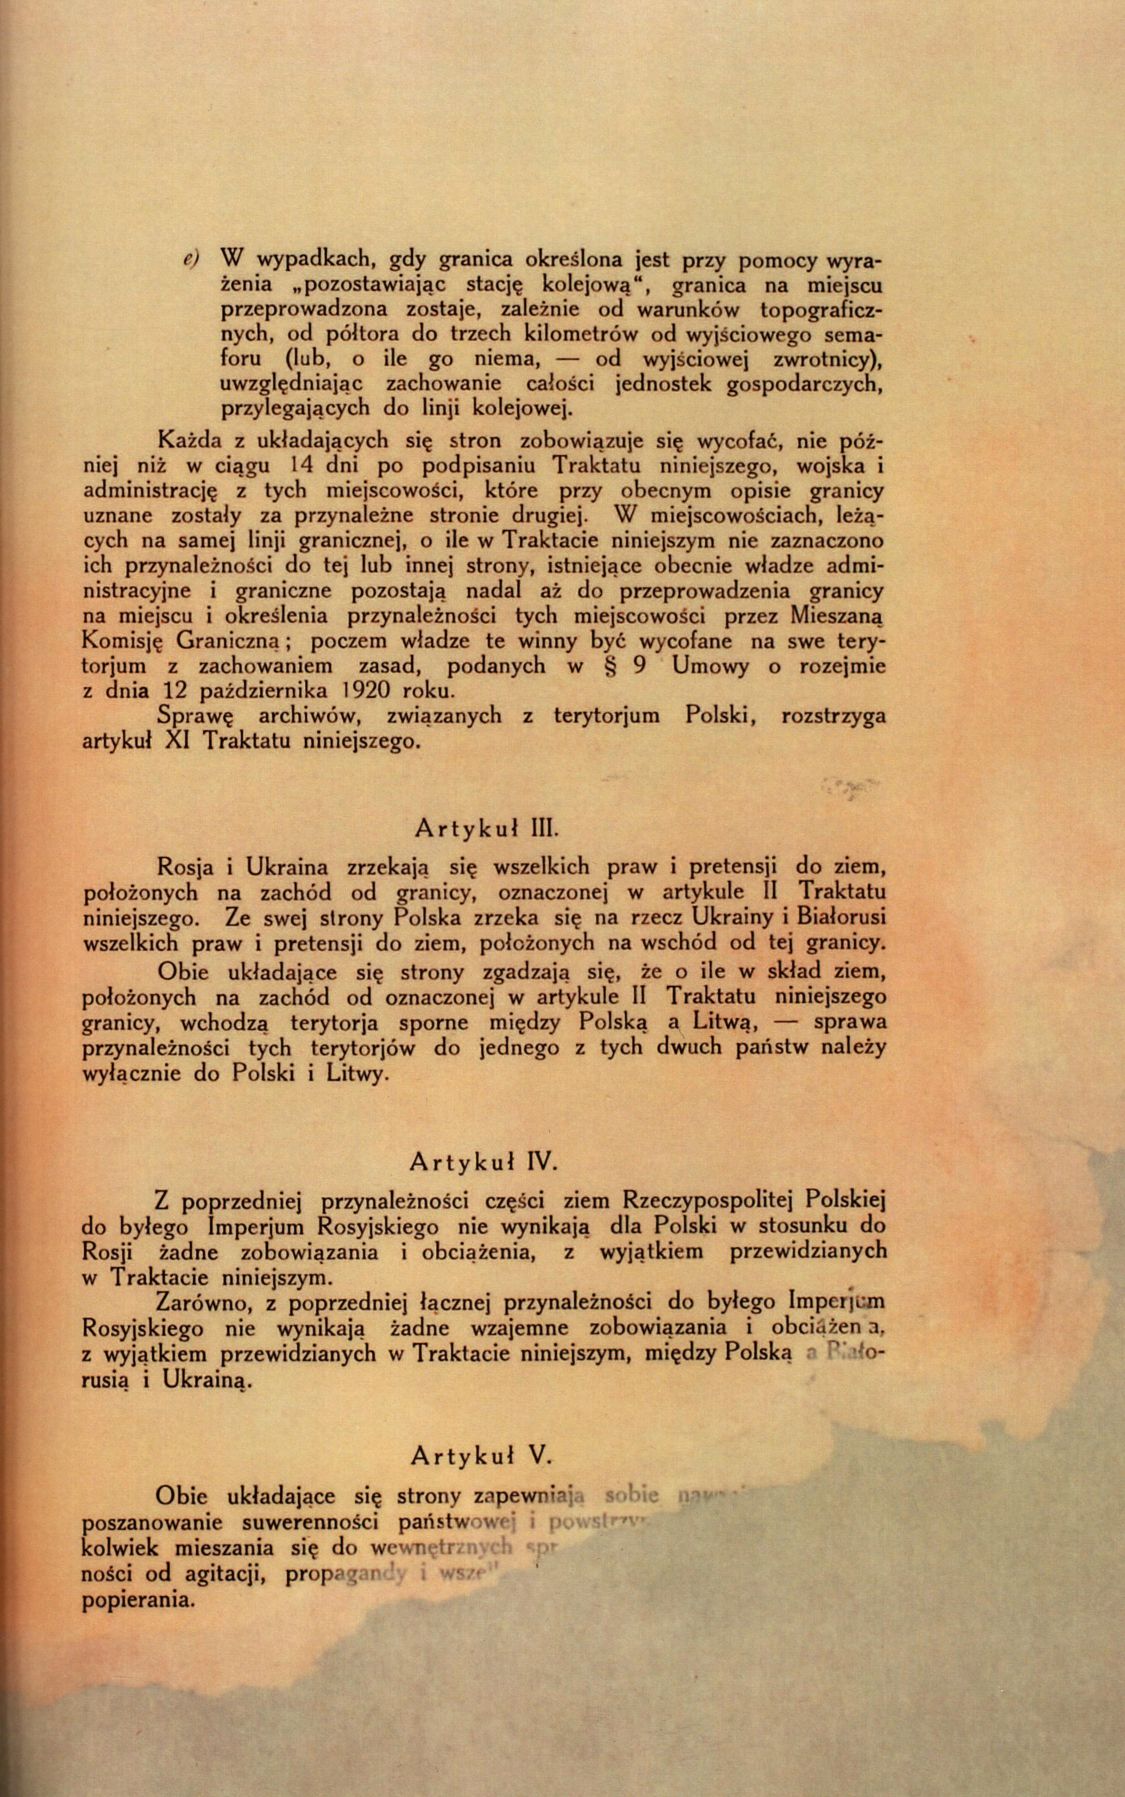 Traktat Pokoju między Polską a Rosją i Ukrainą podpisany w Rydze dnia 18 marca 1921 roku, s. 7, MSZ, sygn. 6739.